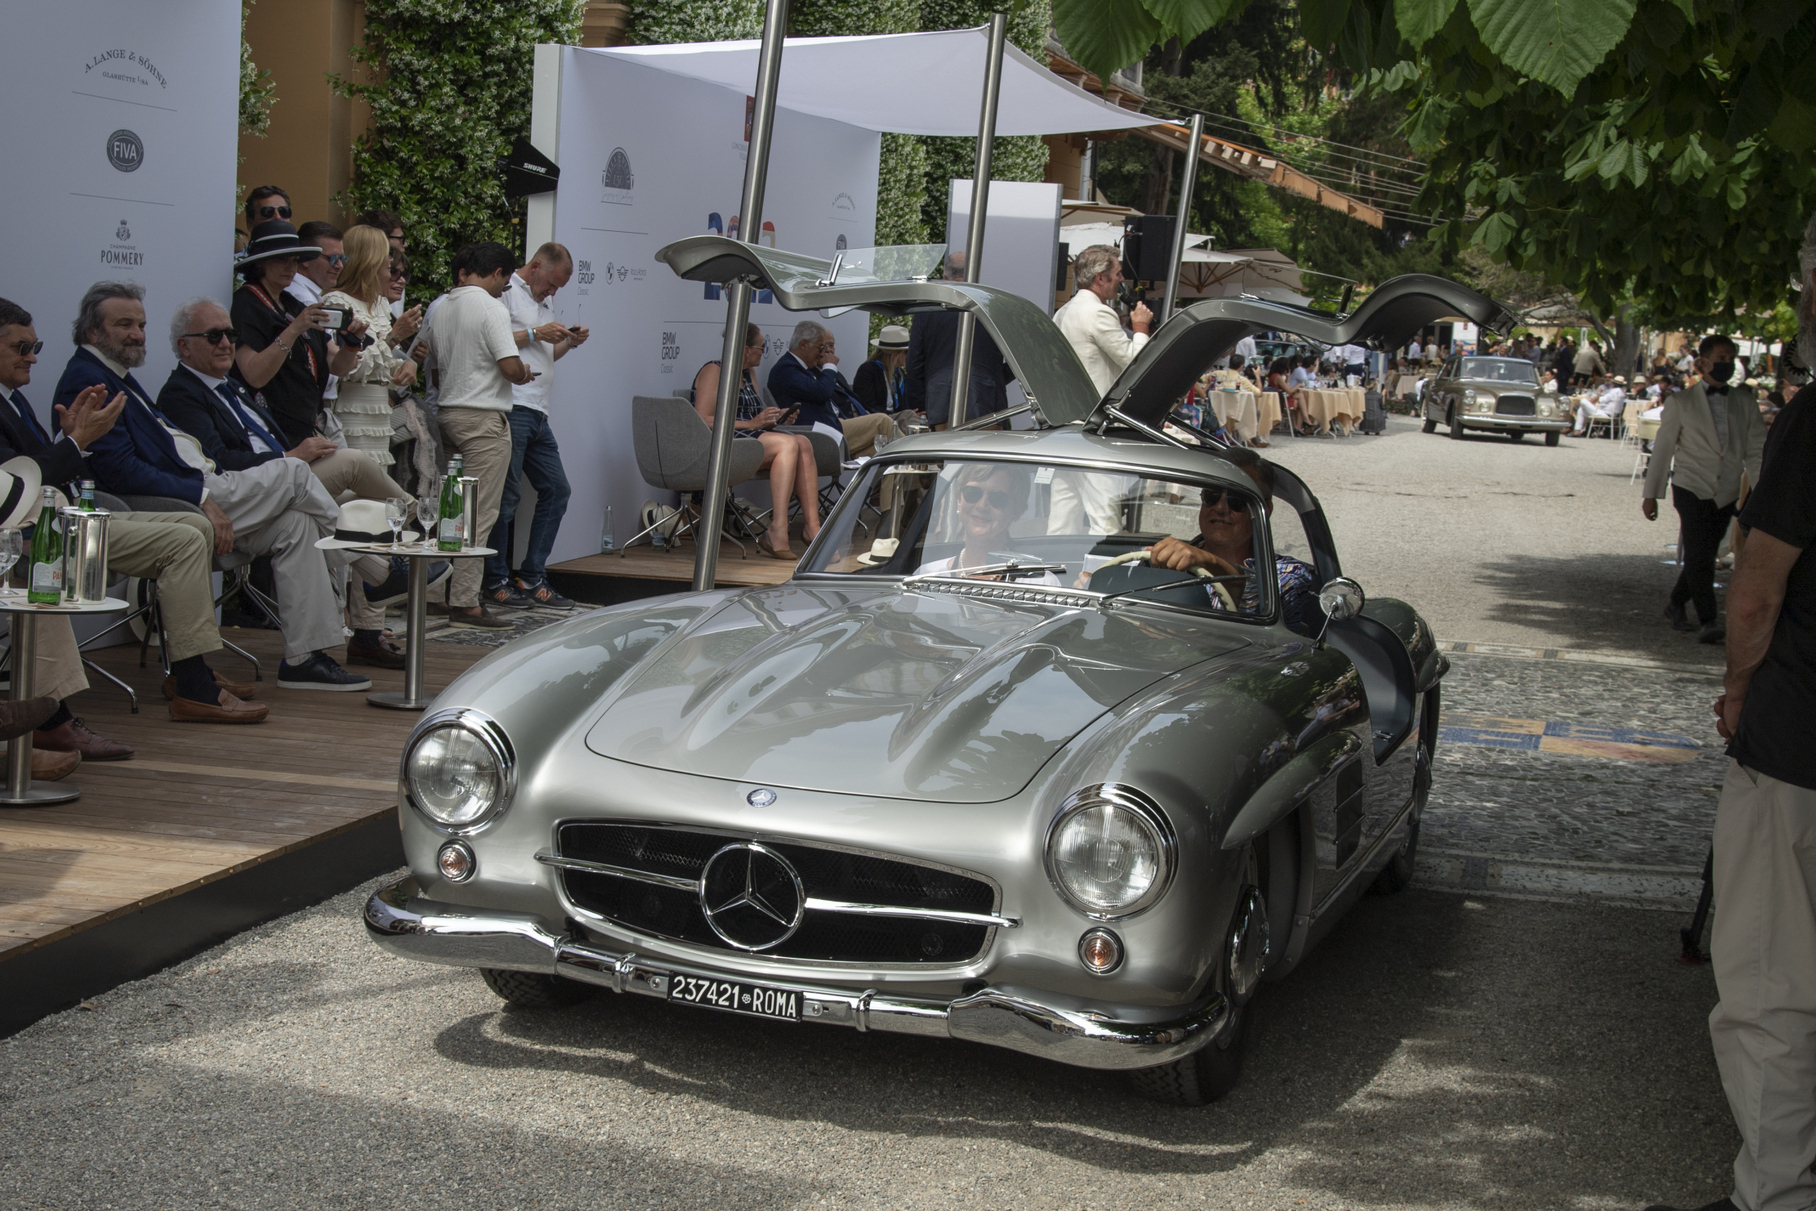 «Крыло чайки», Mercedes-Benz 300 SL — возможно, самый узнаваемый спорткар пятидесятых. А этот экземпляр ещё и с итальянским бэкграундом: первым владельцем была кинозвезда Софи Лорен!